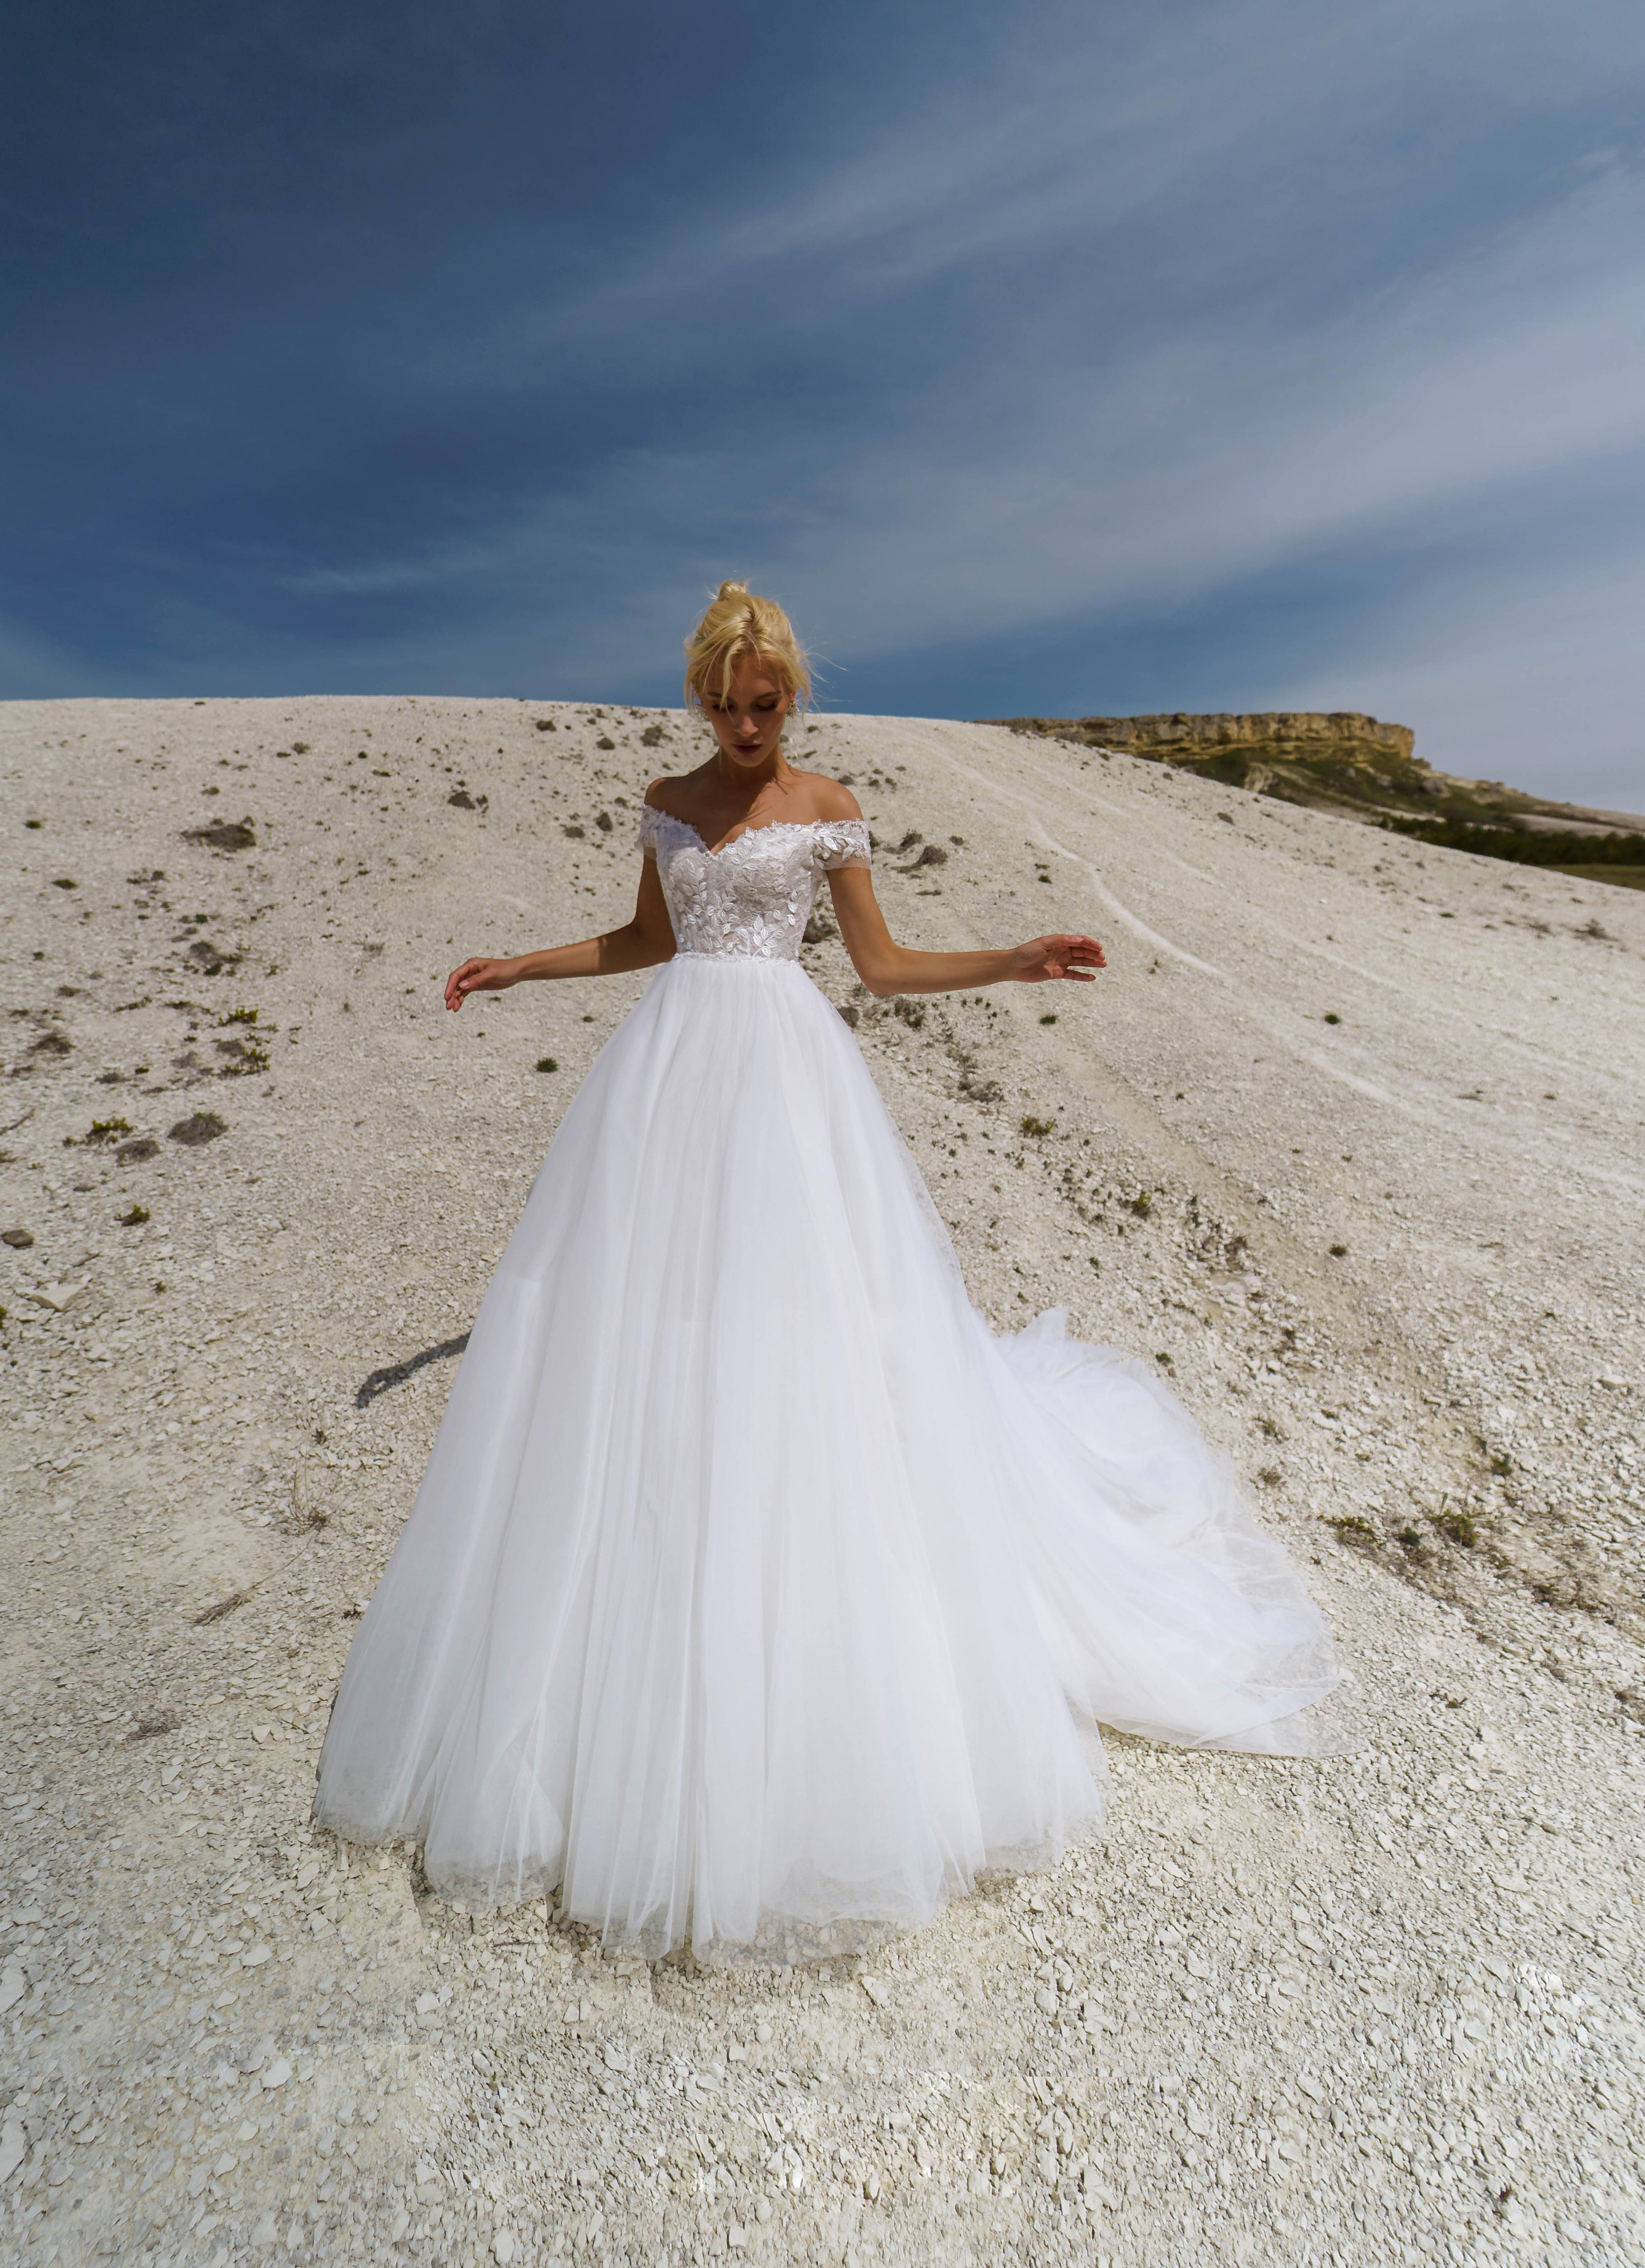 Купить свадебное платье «Далия» Наталья Романова из коллекции Блаш 2022 года в салоне «Мэри Трюфель»